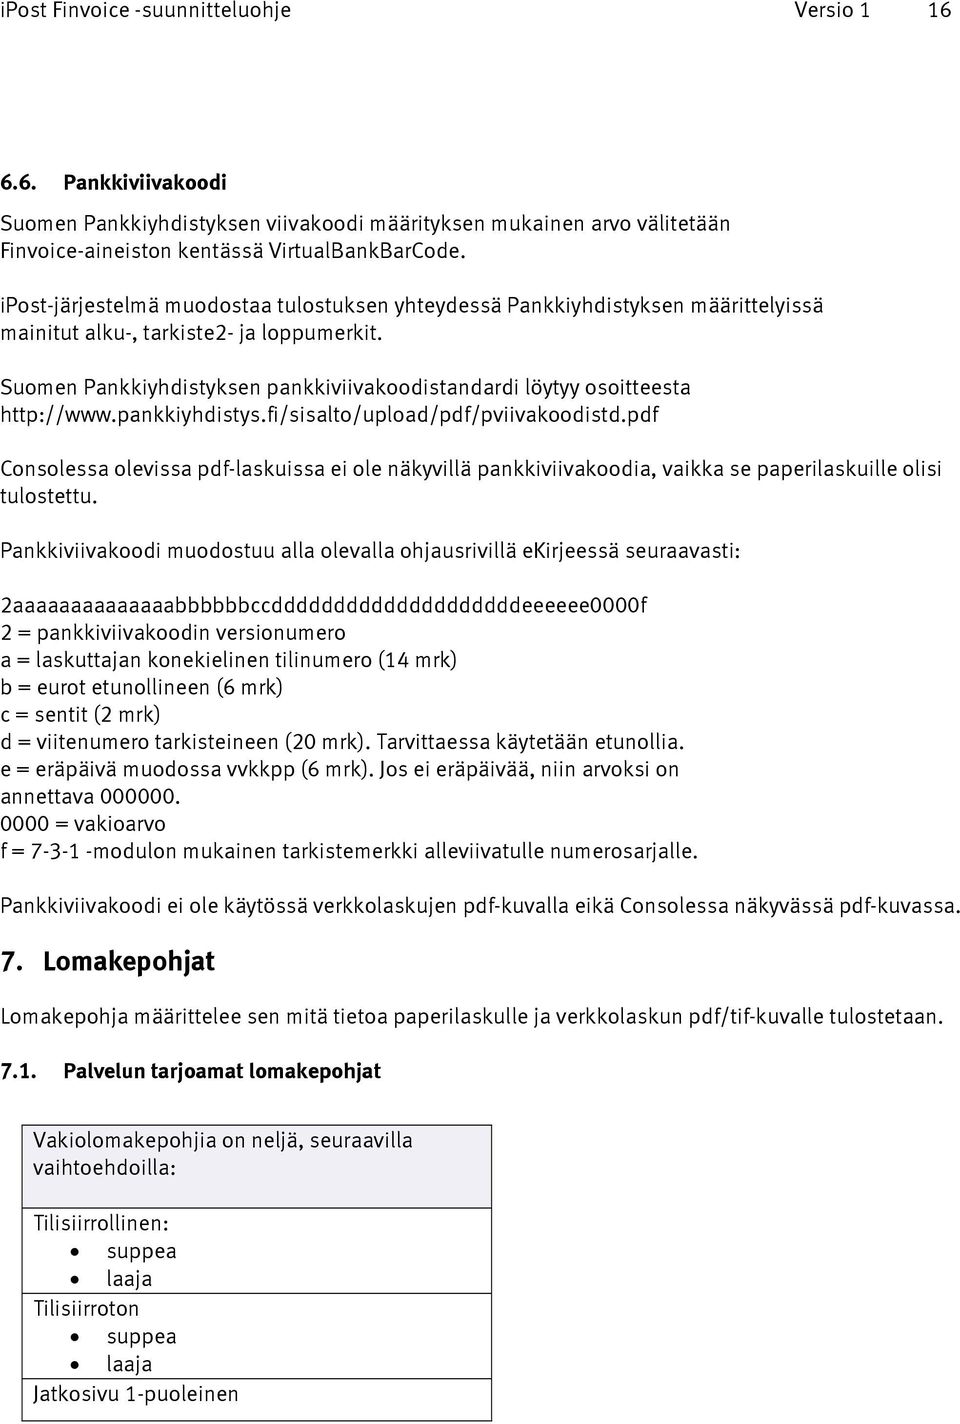 Suomen Pankkiyhdistyksen pankkiviivakoodistandardi löytyy osoitteesta http://www.pankkiyhdistys.fi/sisalto/upload/pdf/pviivakoodistd.